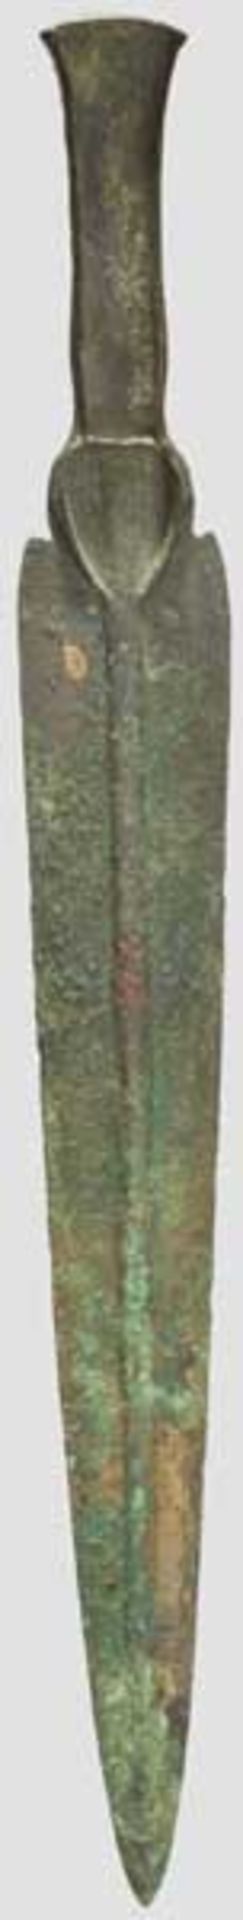 Bronzedolch mit Randleistengriff, Luristan", spätes 2. bis frühes 1. Jtsd. v. Chr.  " Einteilig